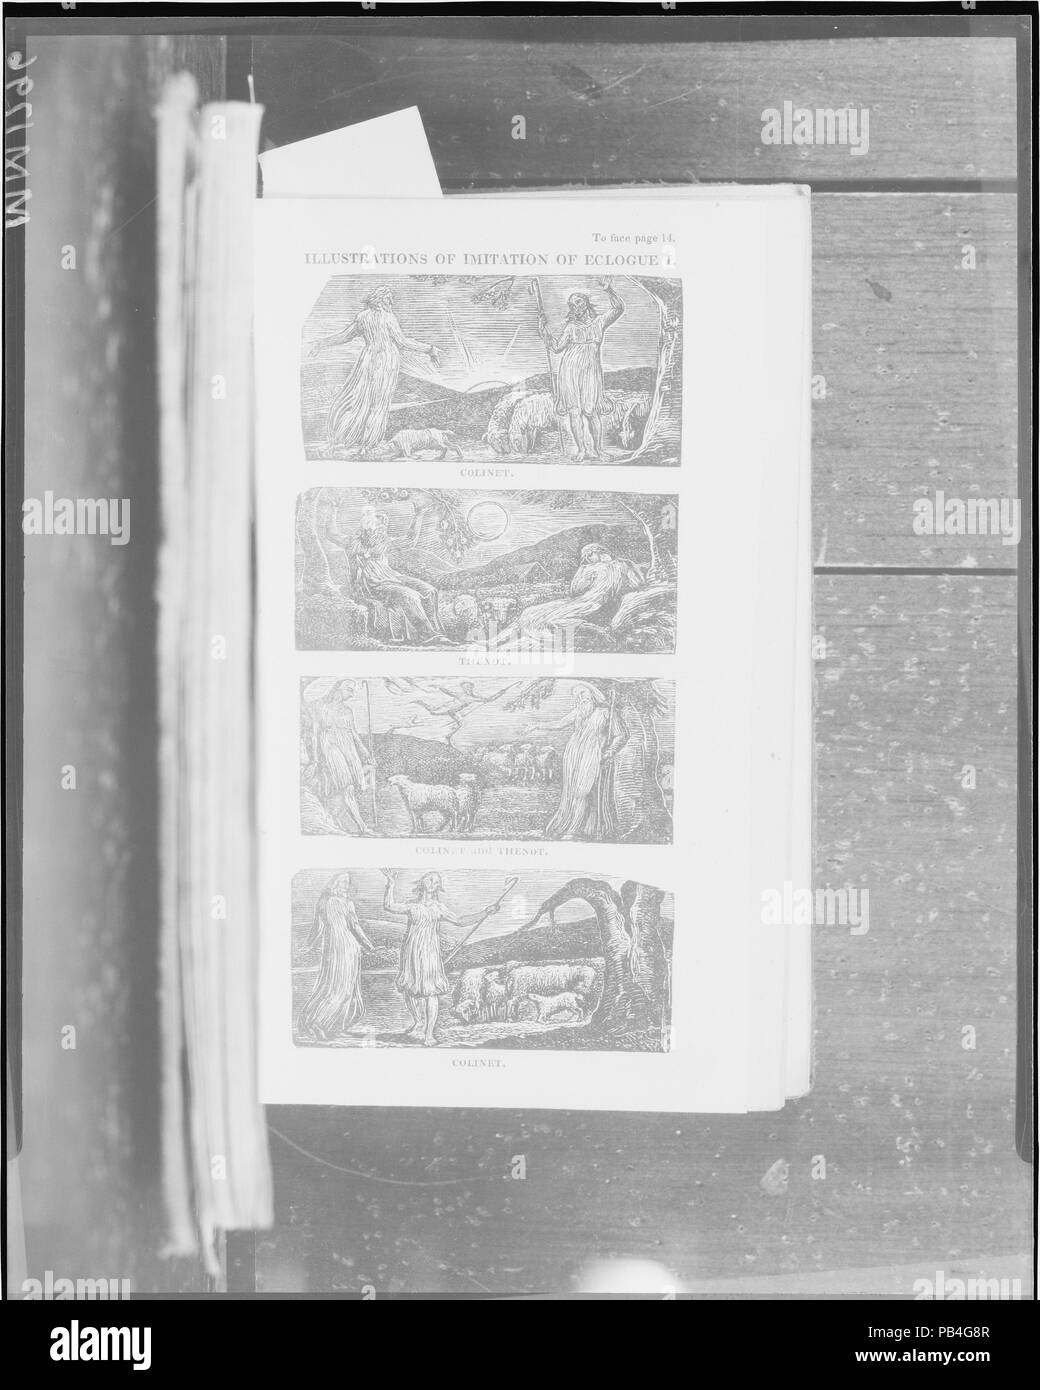 Il Pastorals di Virgilio, con un corso di inglese letto, adatto per le scuole, Vol. I. Autore: Virgilio (romana, Ande 70 A.C.-19 B.C. Brundisium). Dimensioni: 7 1/16 x 4 5/16 in. (18 x 11 cm). Editor: Robert John Thornton (British, 1768-1837). Illustrator: William Blake (British, Londra Londra 1757-1827). Editore: F. C. & J. Rivington (Londra). Data: 1821. Museo: Metropolitan Museum of Art di New York, Stati Uniti d'America. Foto Stock